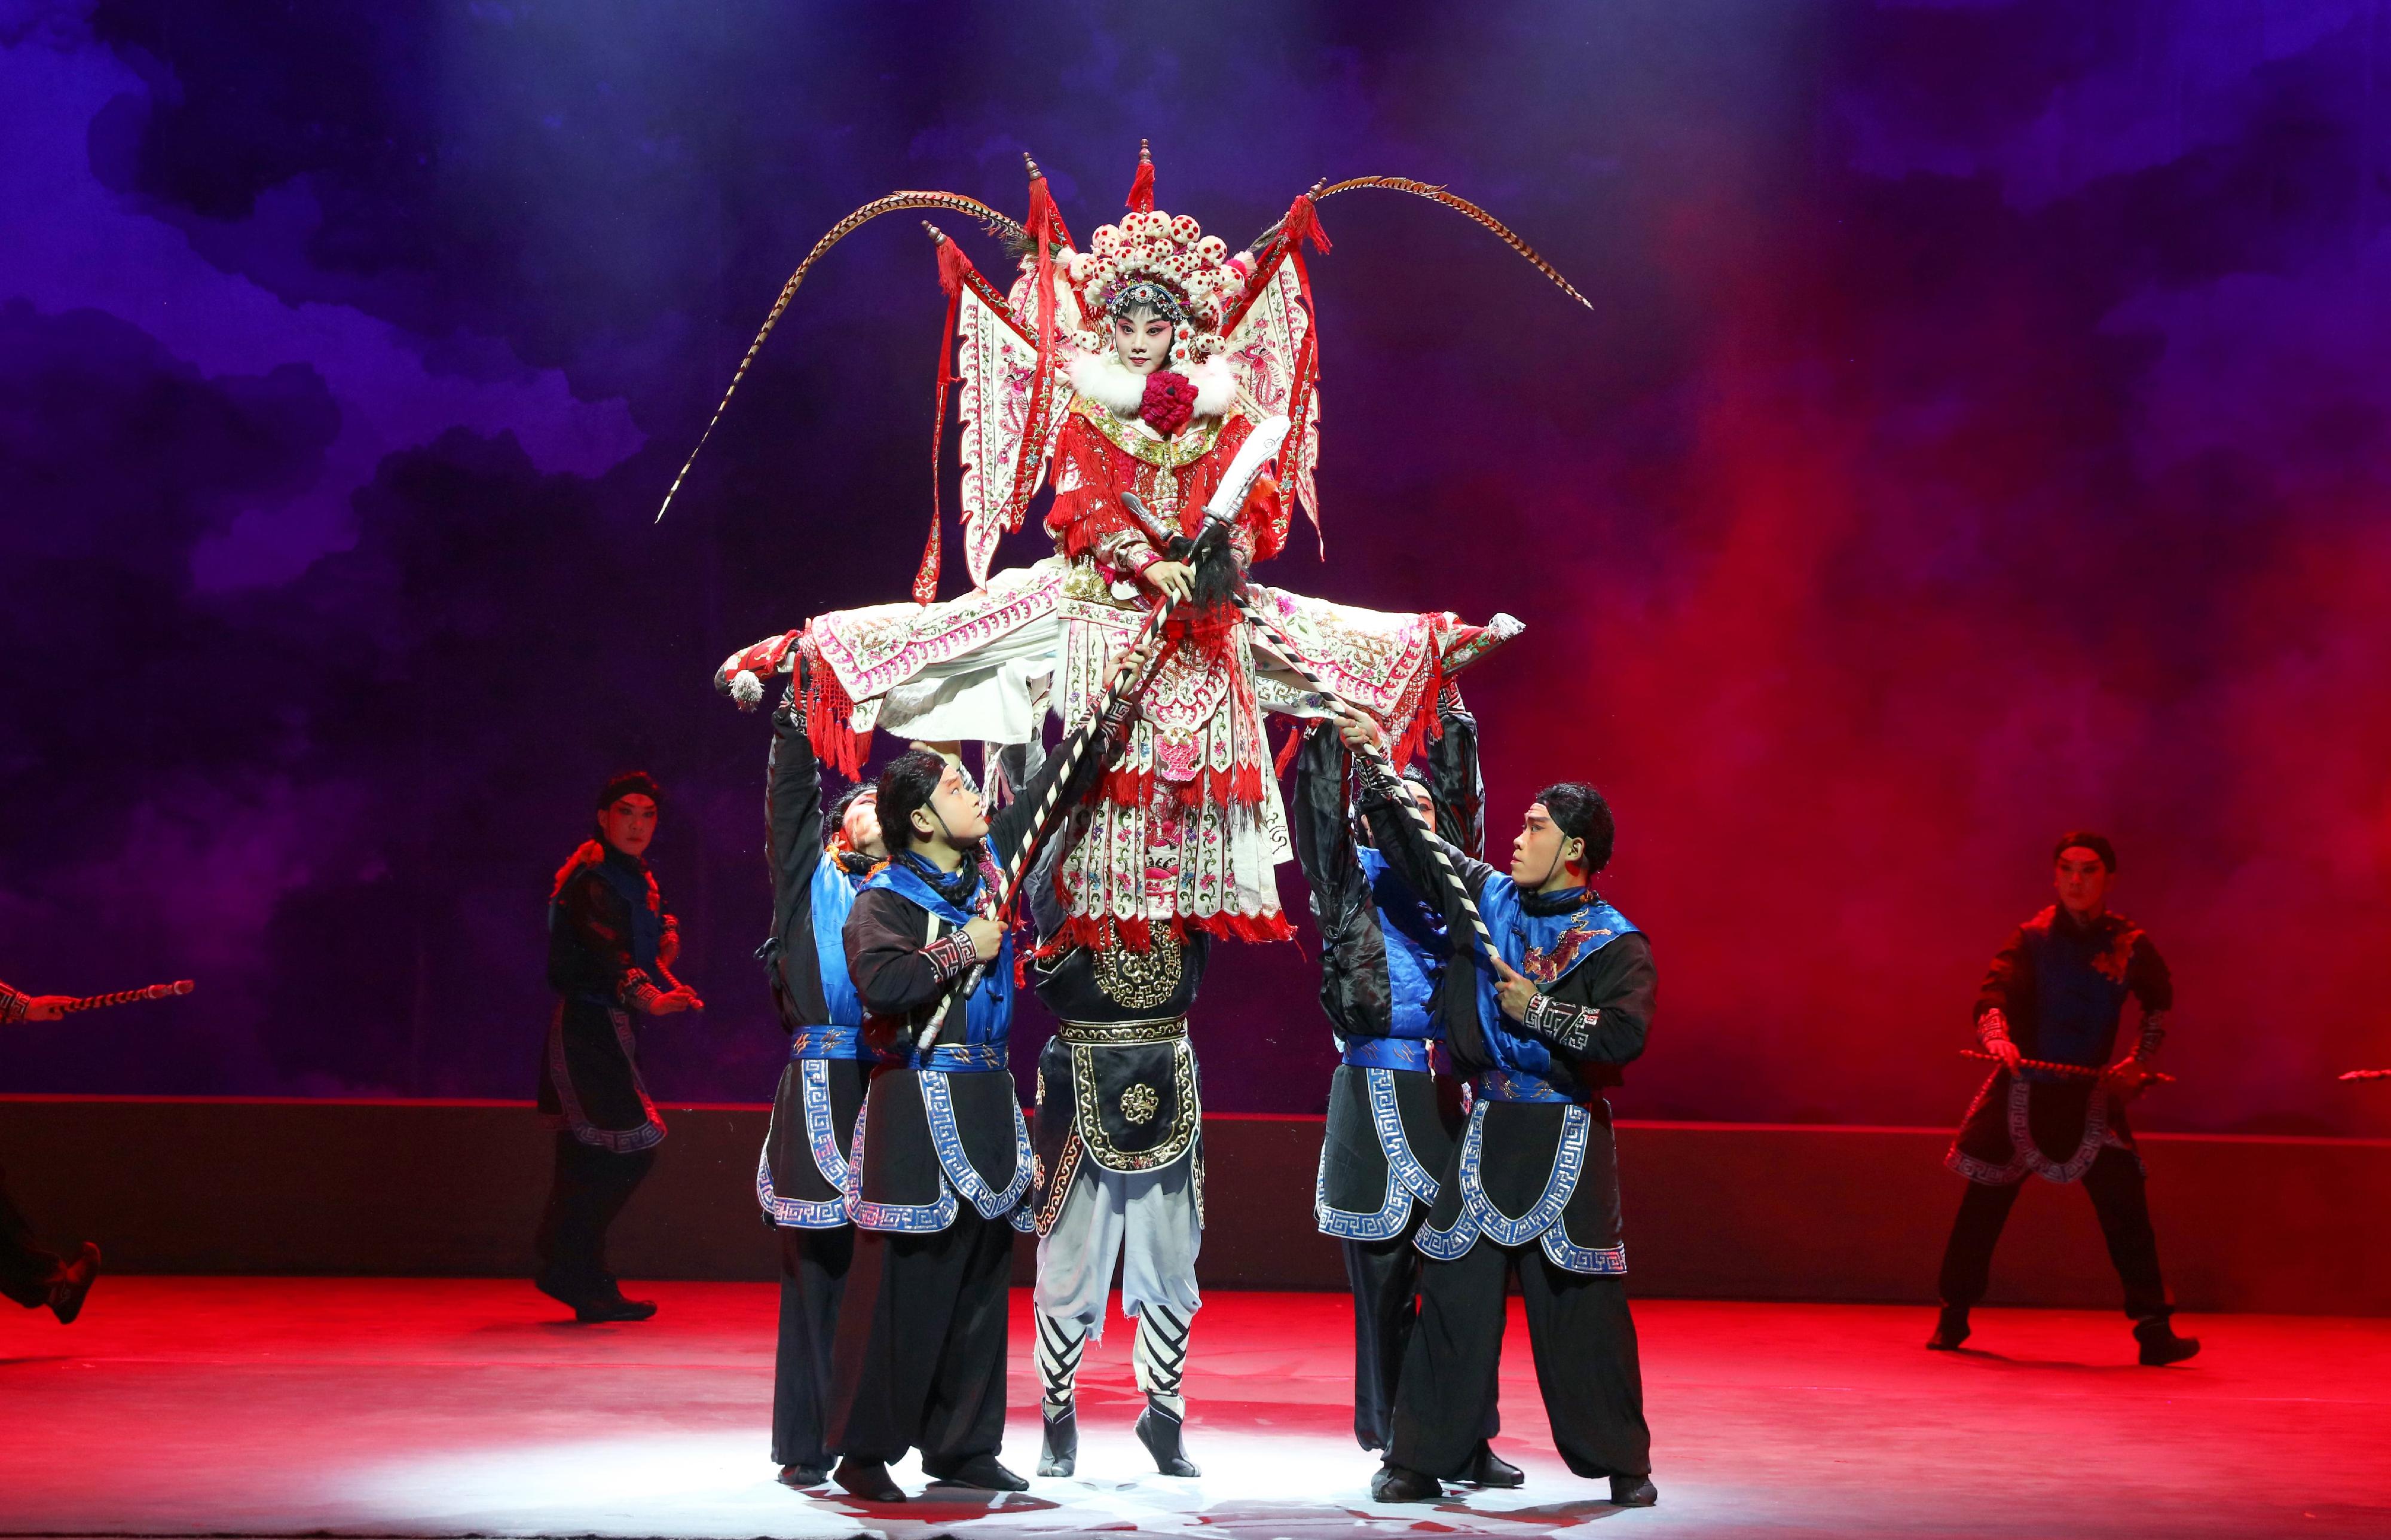 首届-中华文化节-六月至九月举办-以光影韵律之美传华夏文化之盛